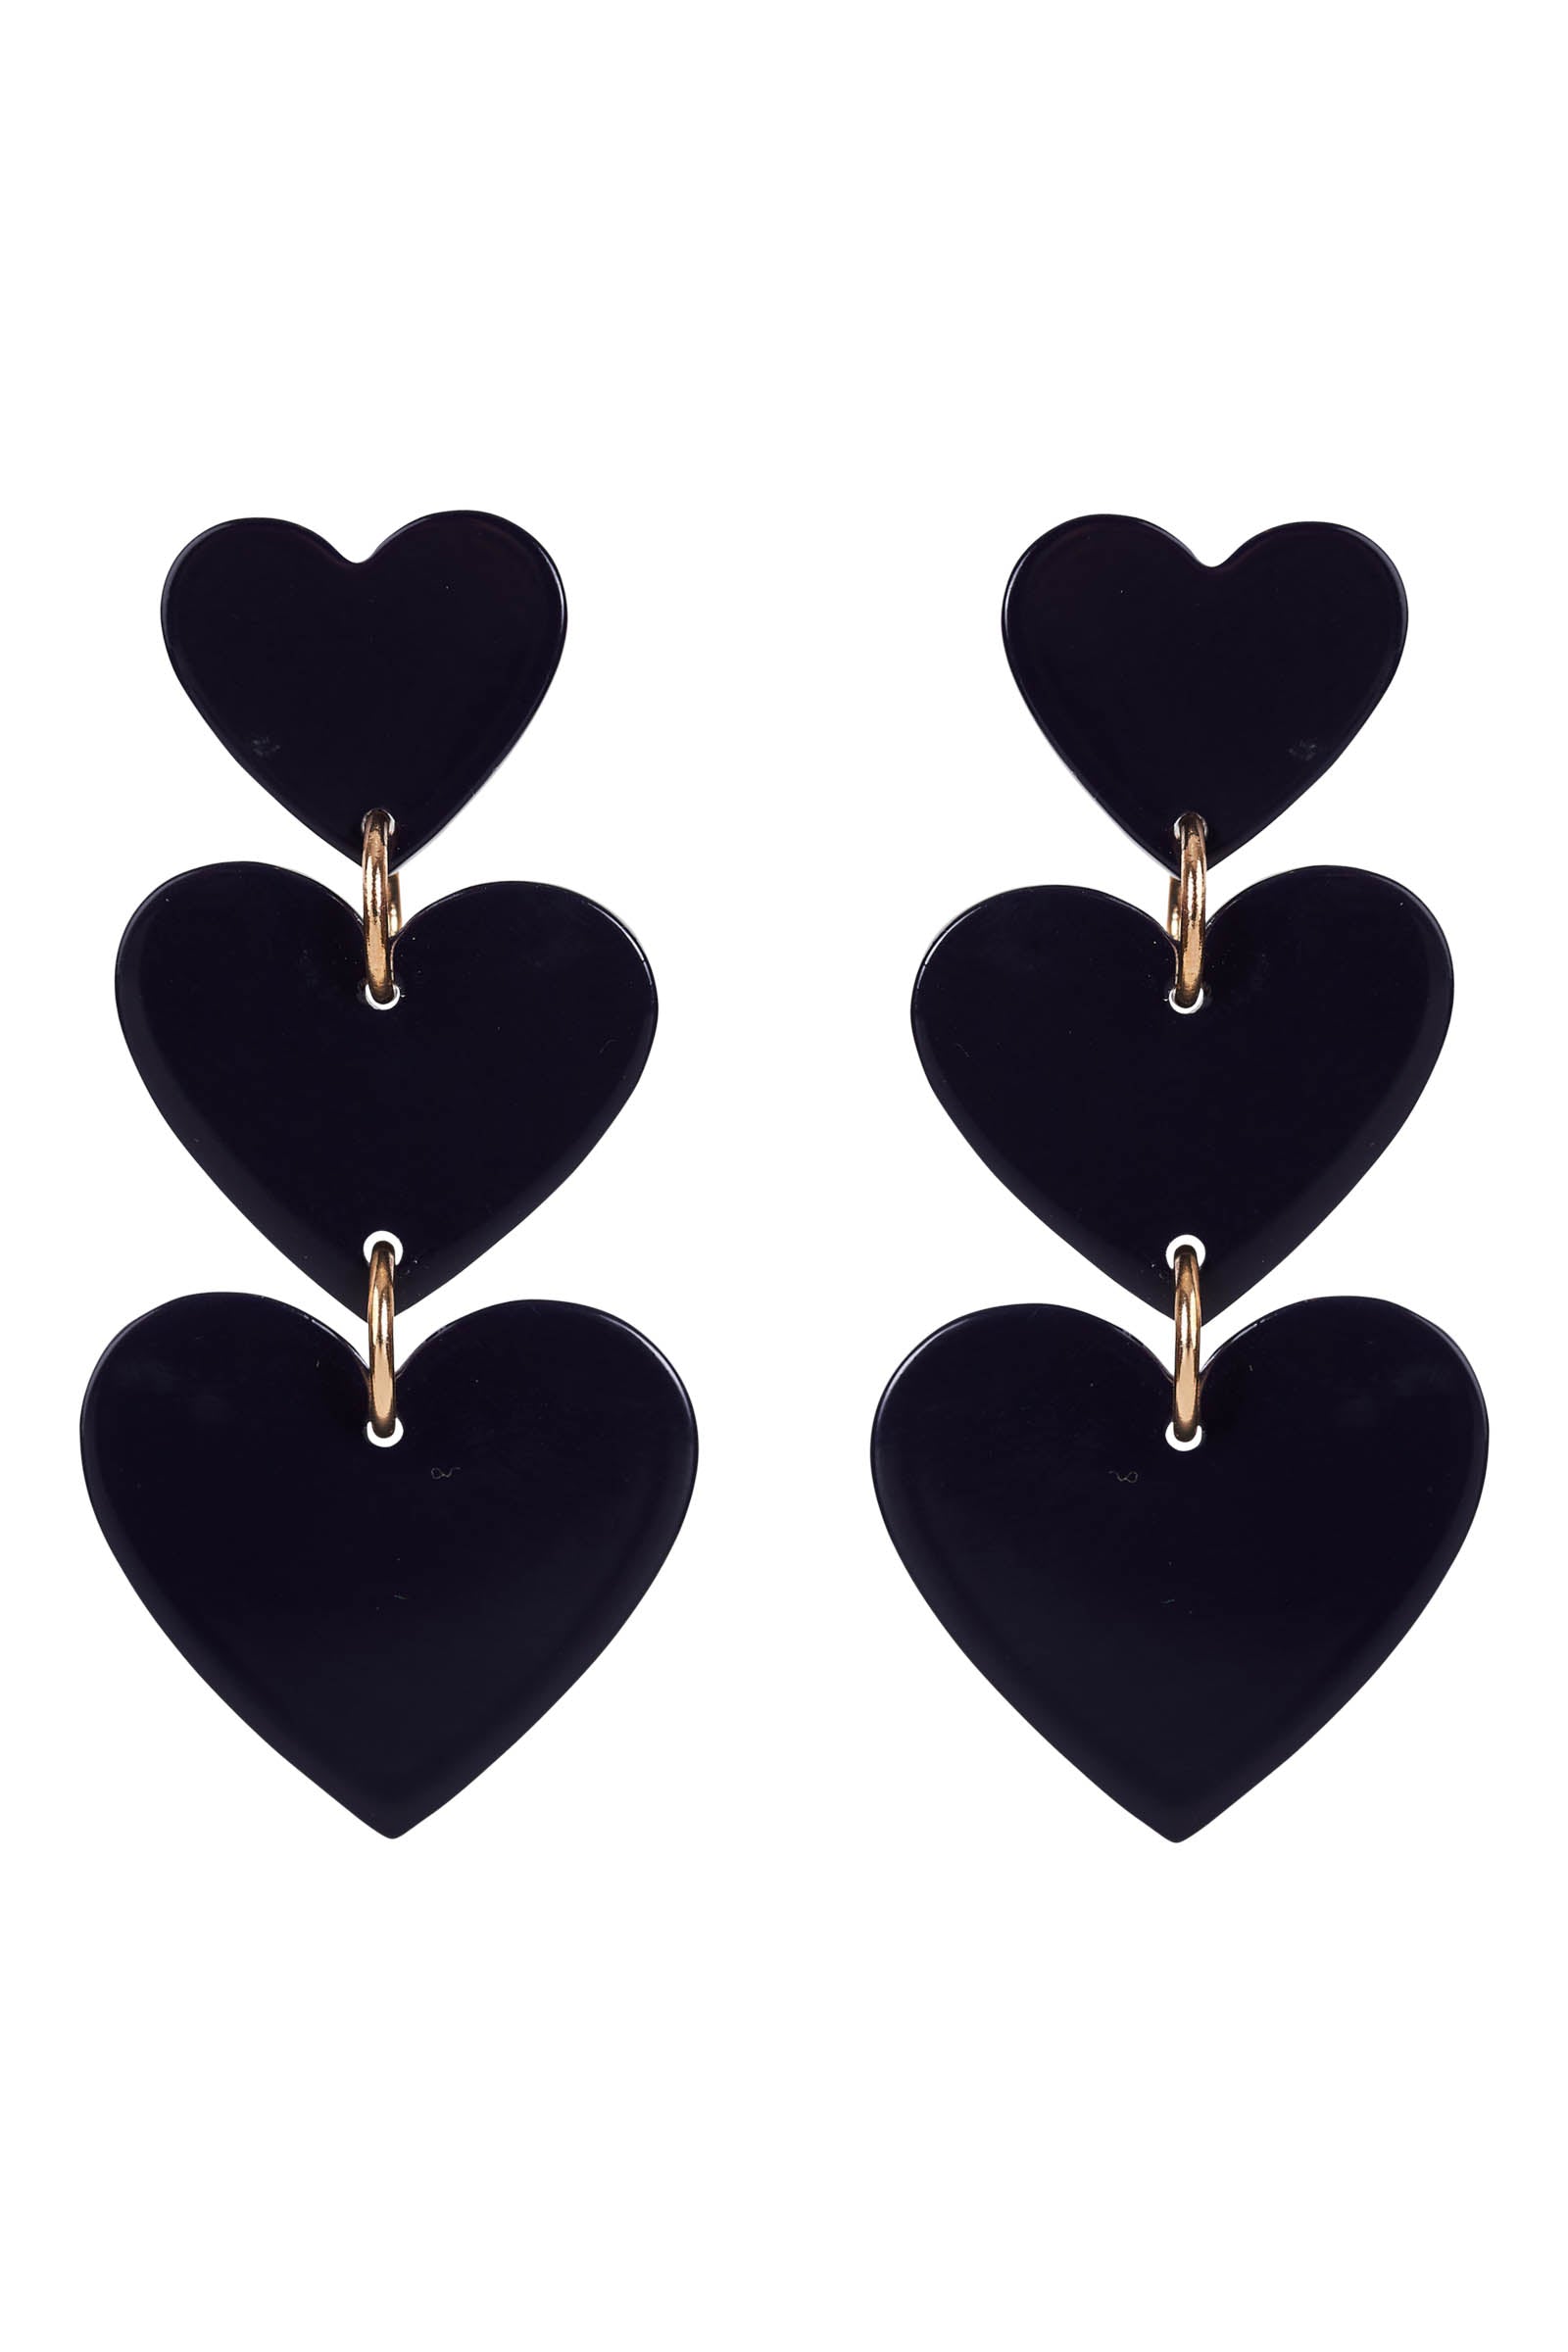 La Vie Heart Earring - Sapphire - eb&ive Earring